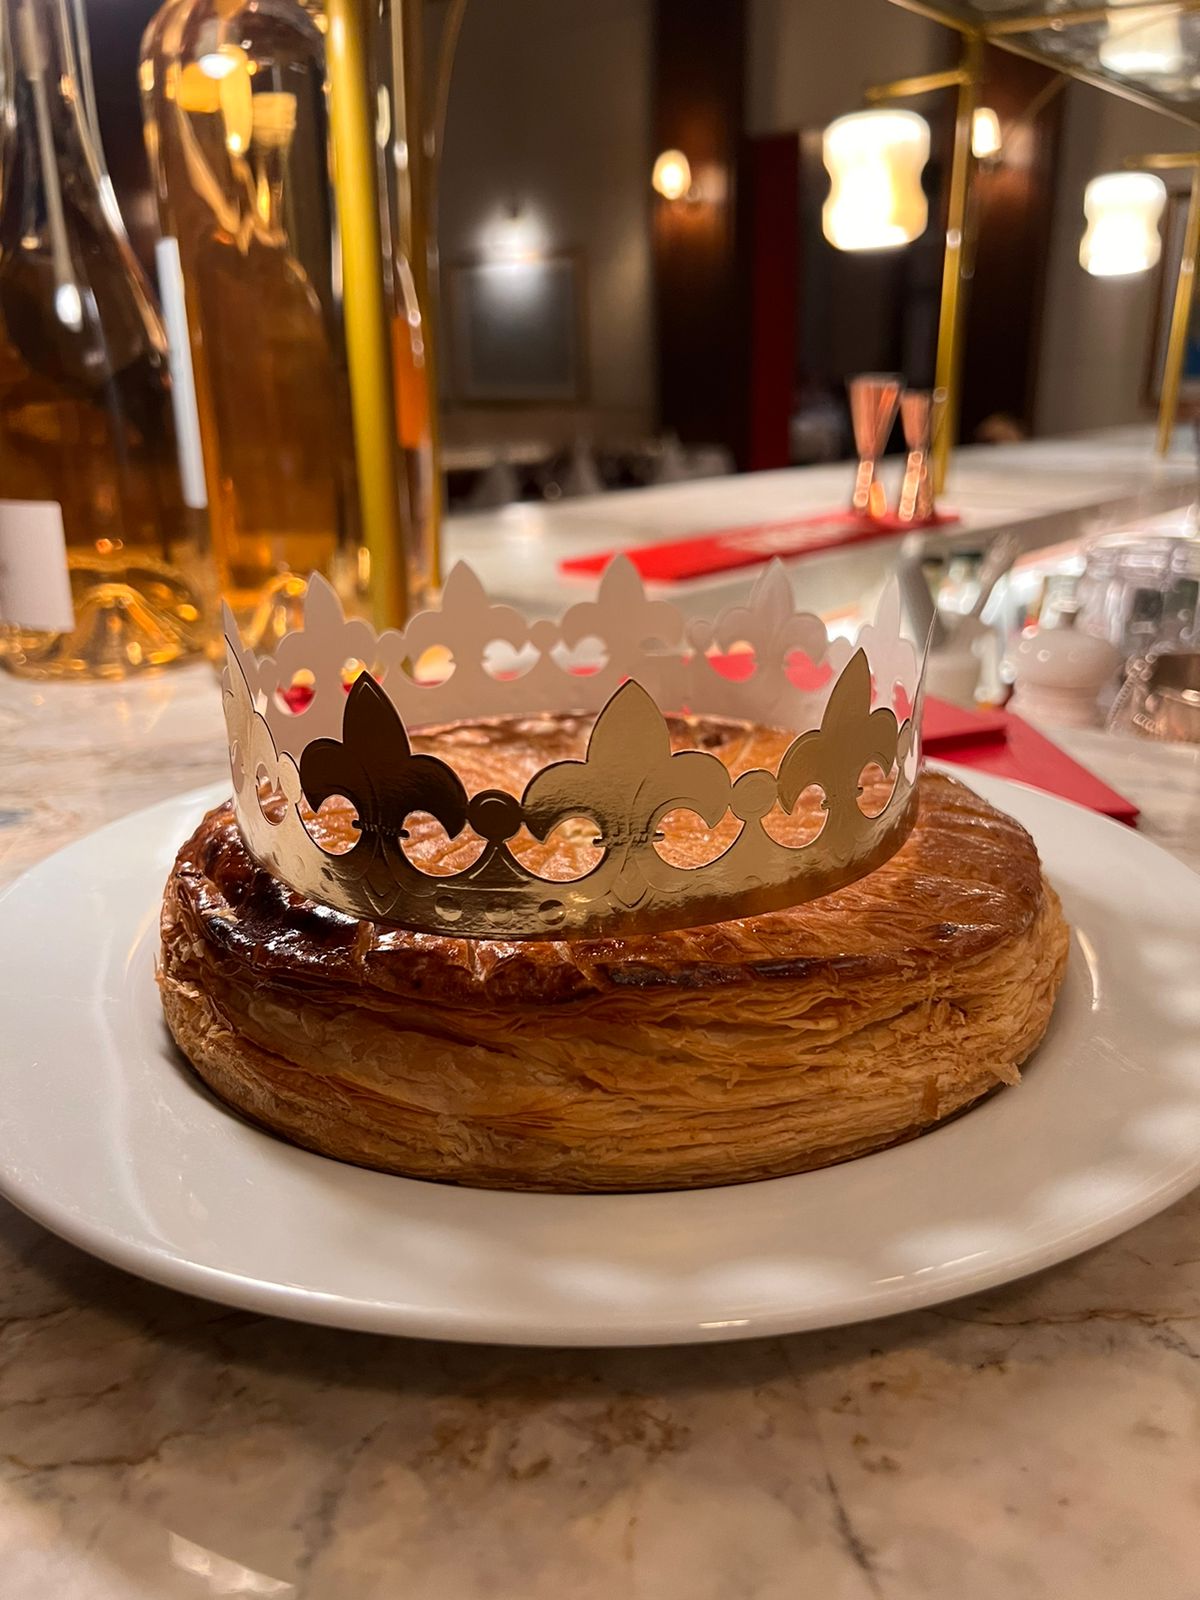 Ile de France convida clientes para celebrar o Dia de Reis Restaurante oferece a todos os clientes fatia da "Galette des Rois"